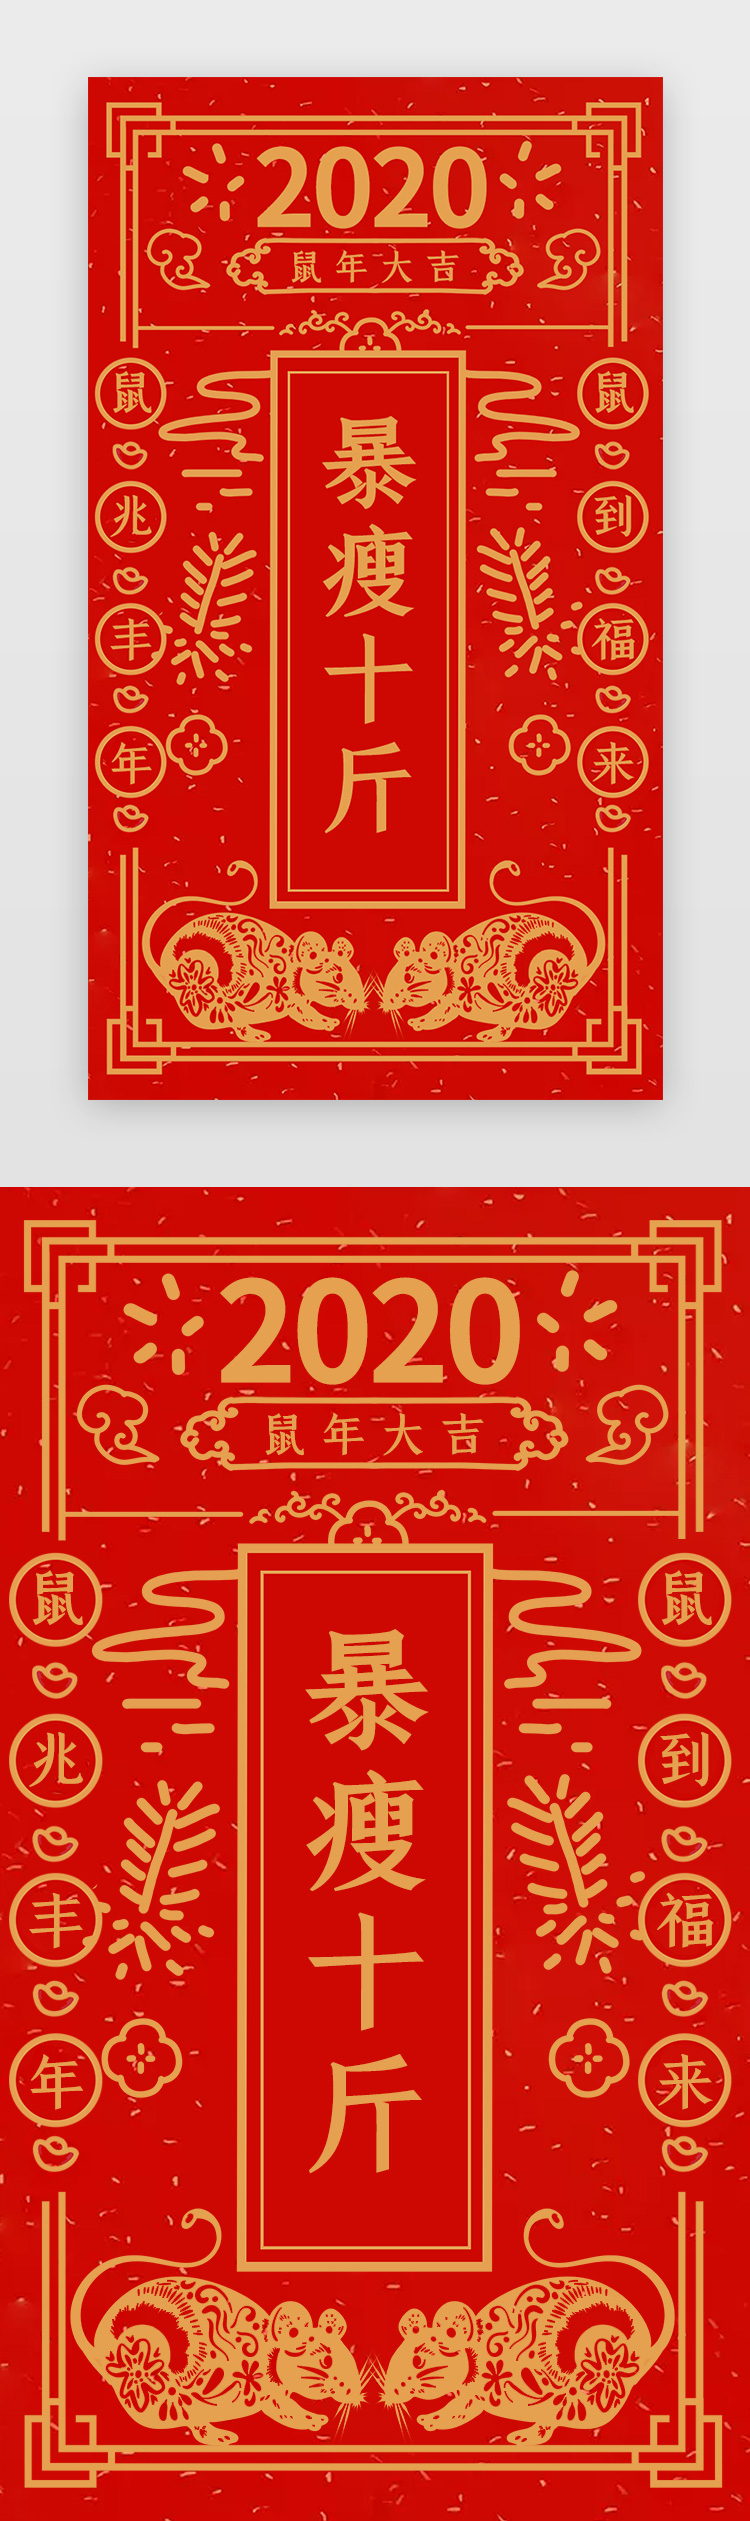 中国风新年签之暴瘦十斤闪屏启动页引导页闪屏图片